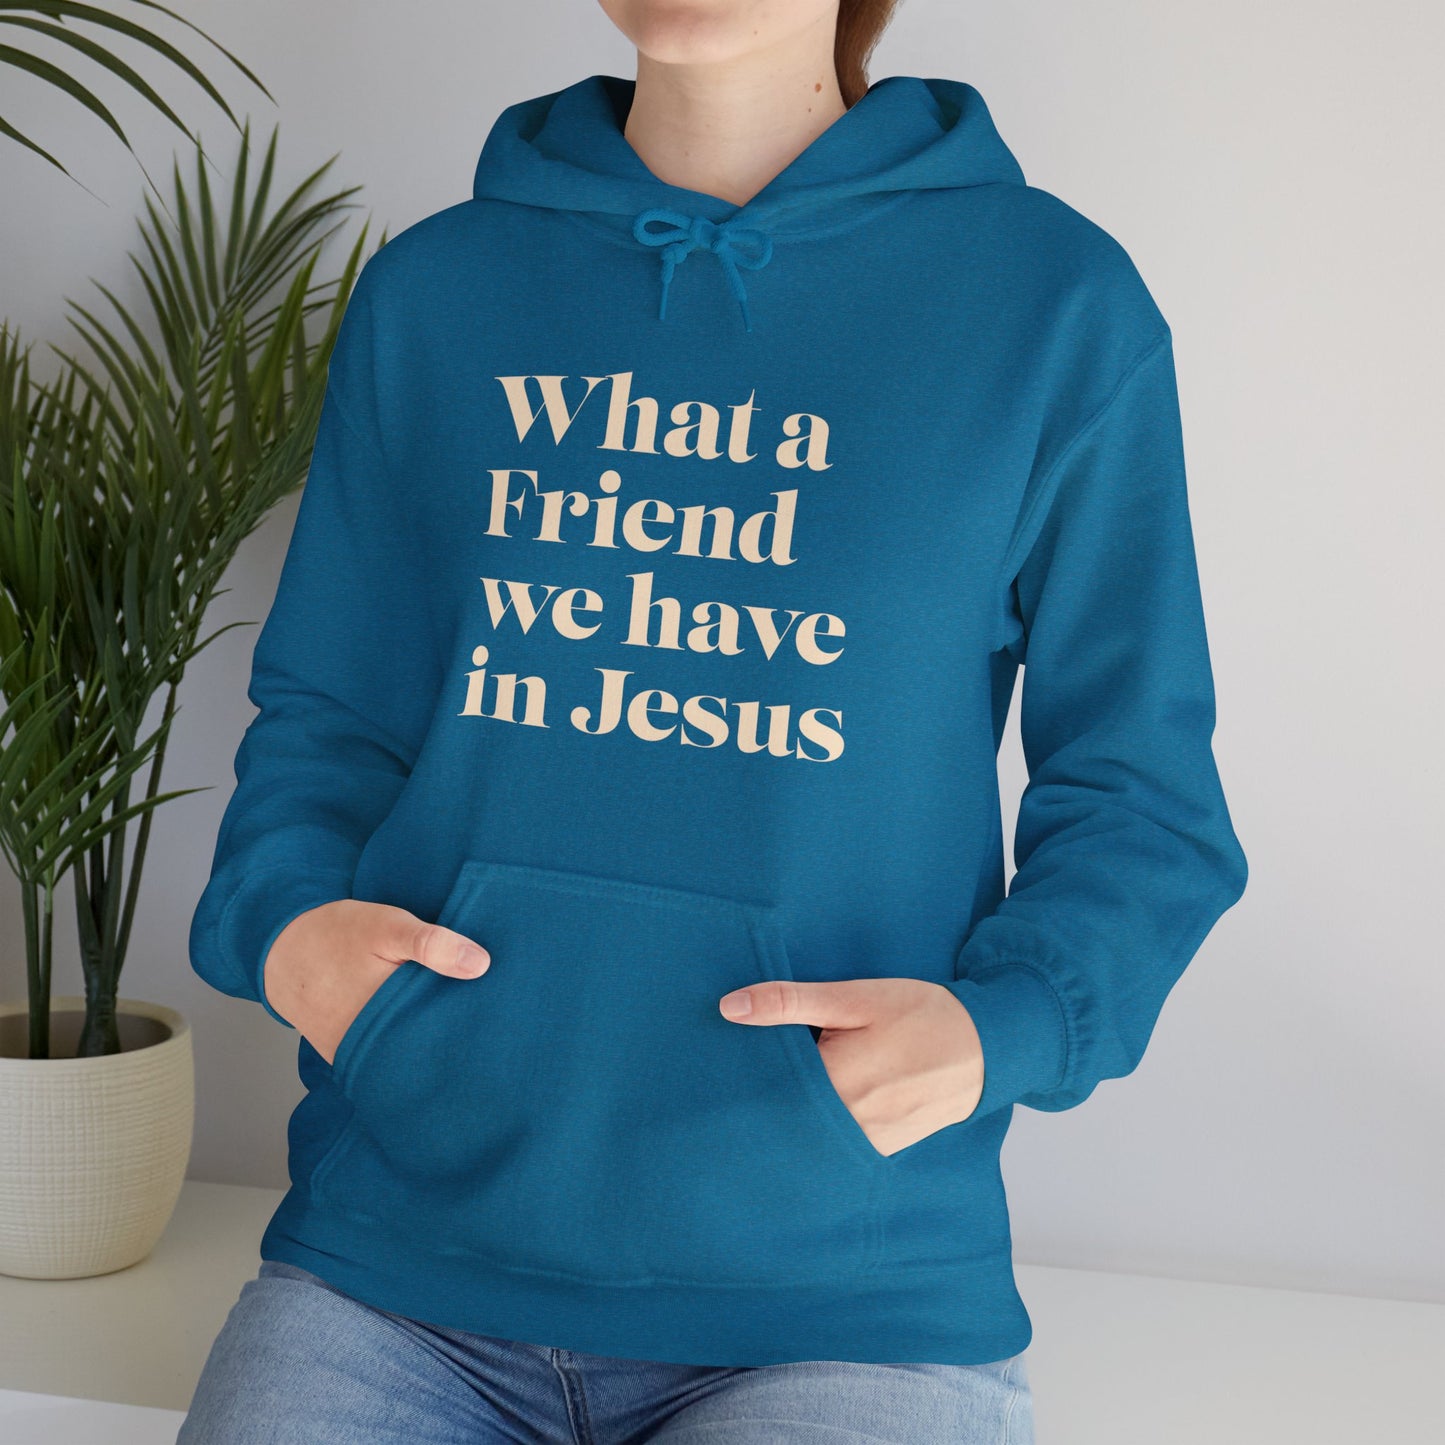 Friend in Jesus Hooded Sweatshirt